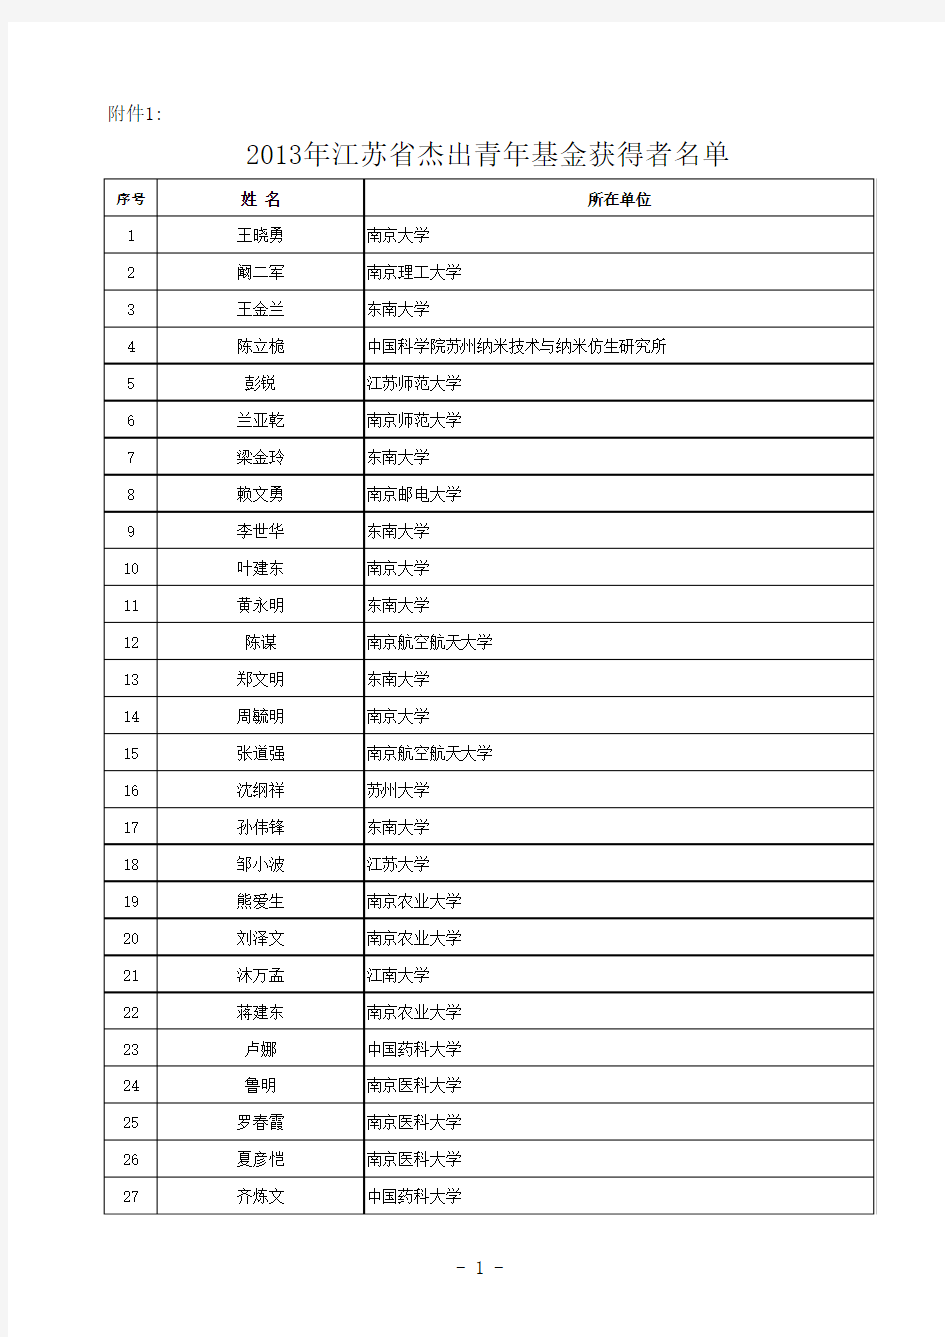 2013江苏省自然科学基金杰出青年基金获得者名单